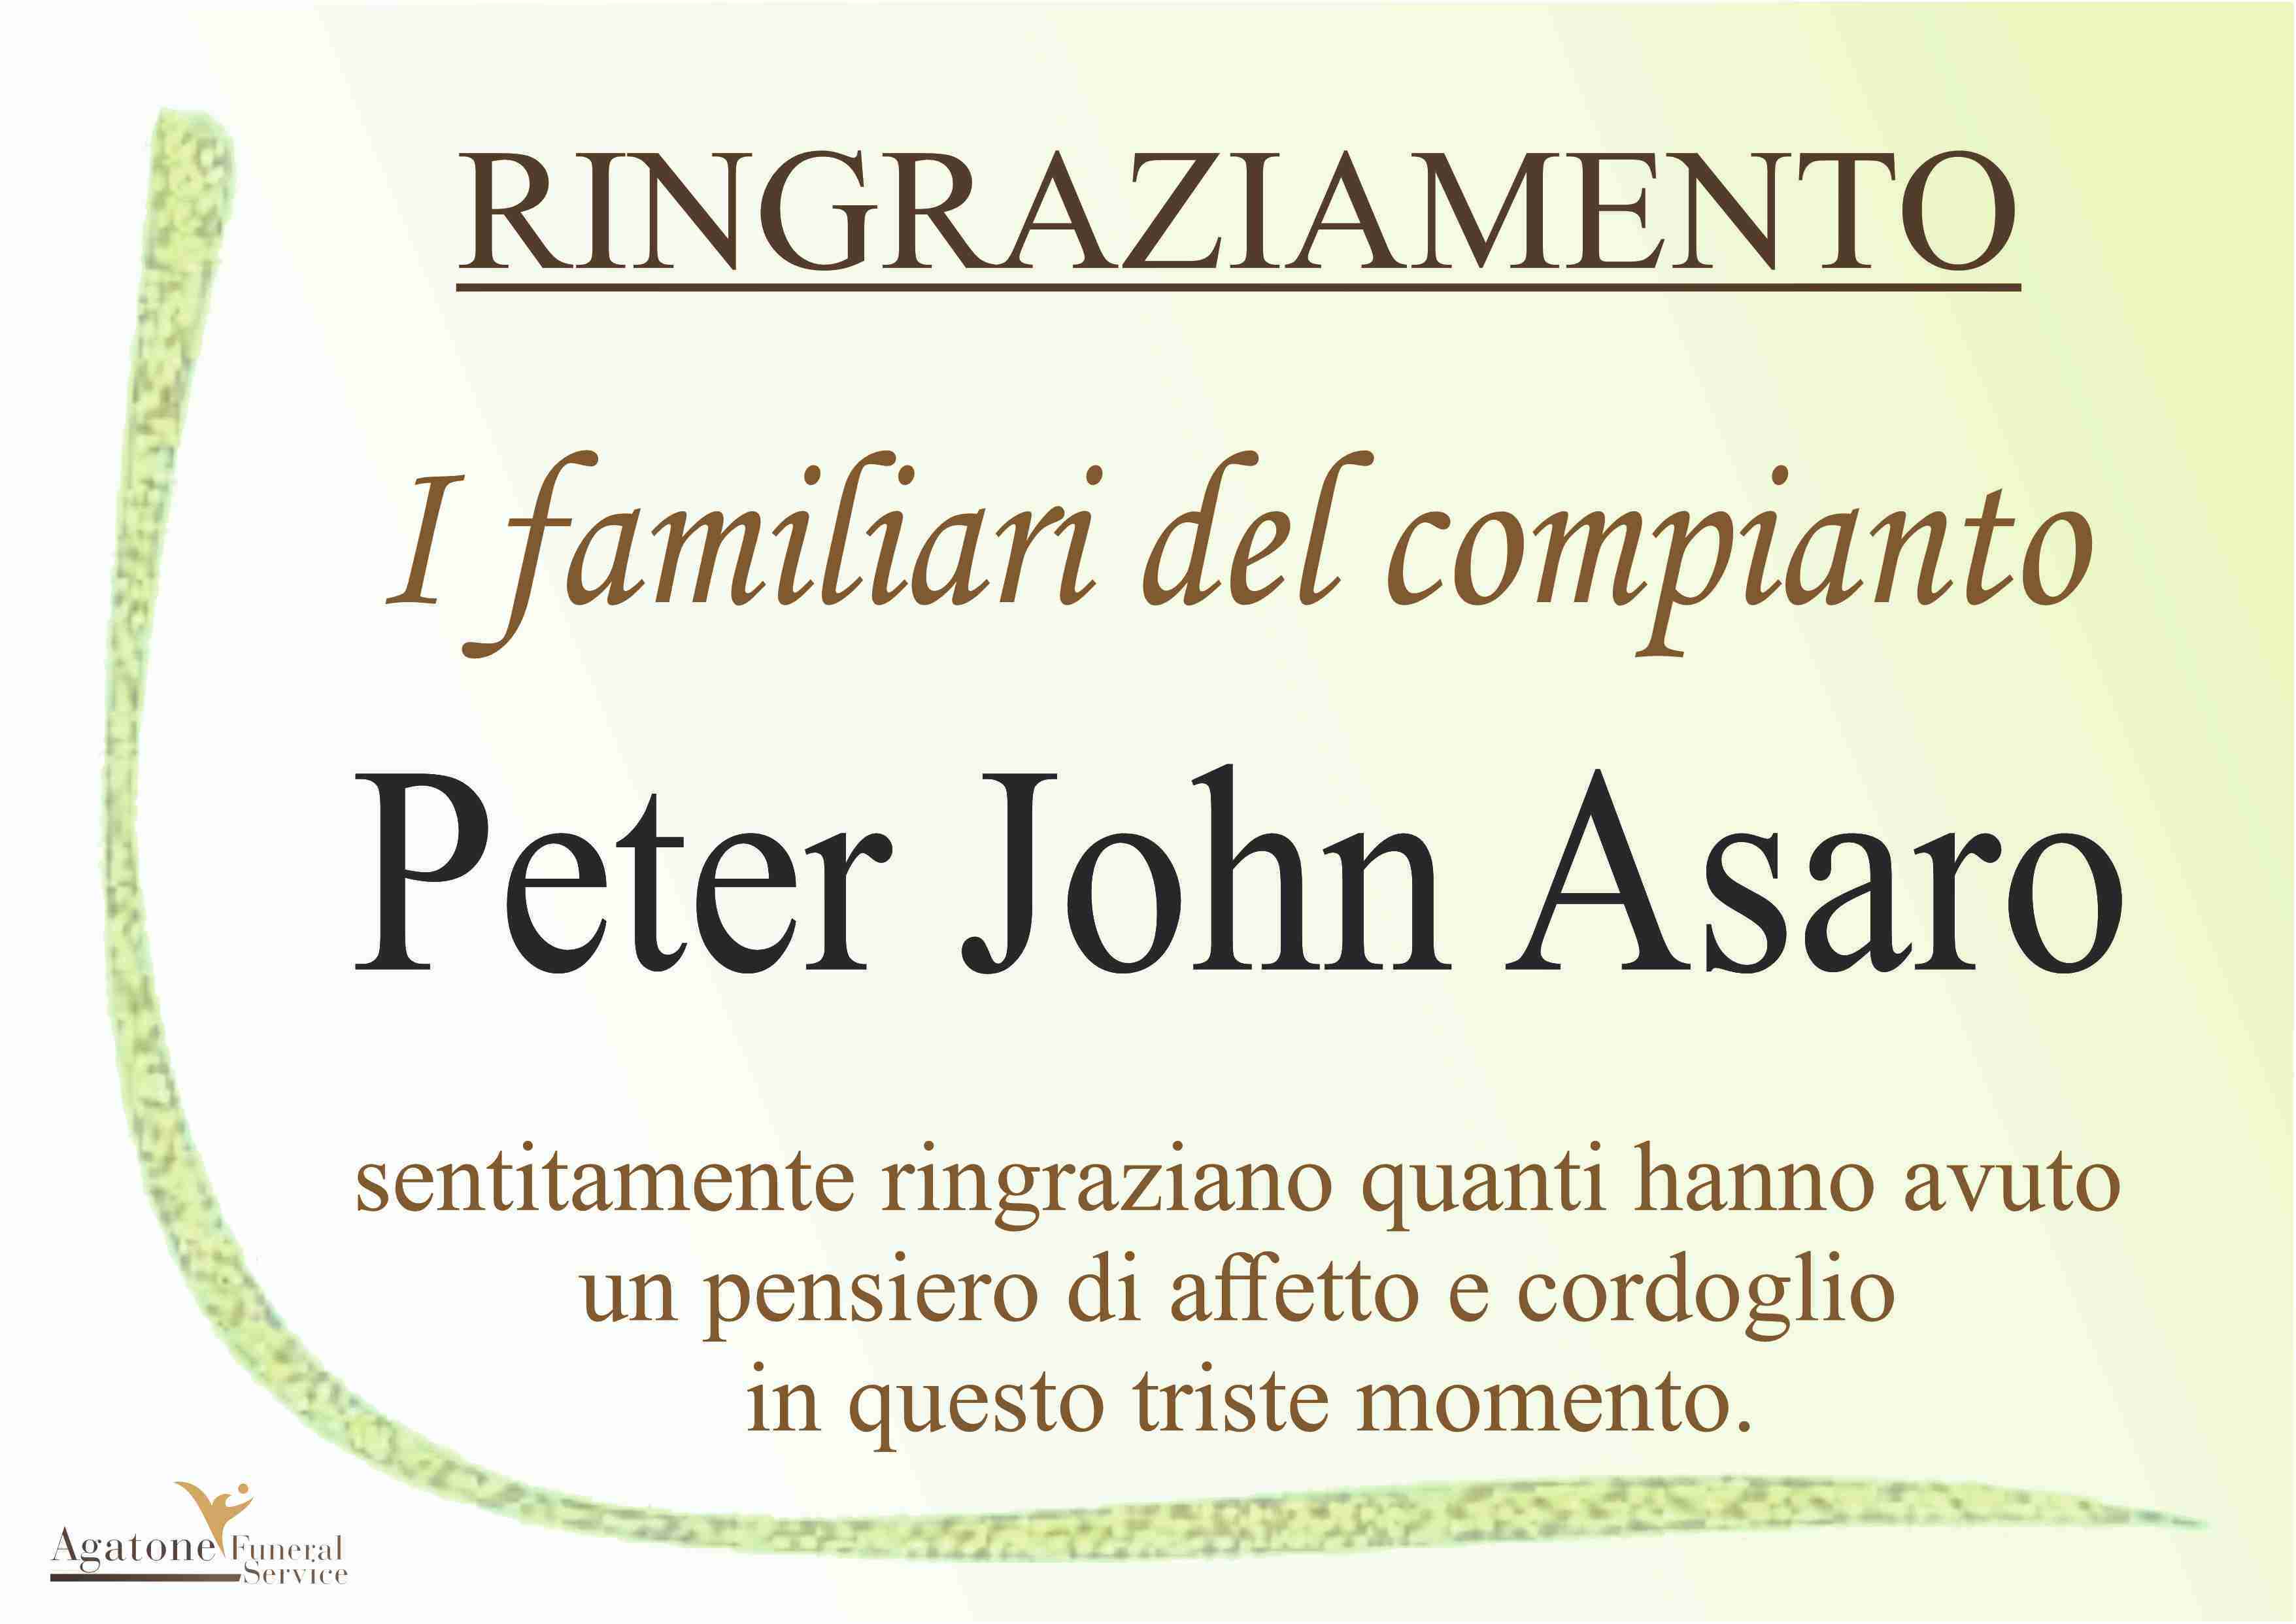 Peter John Asaro